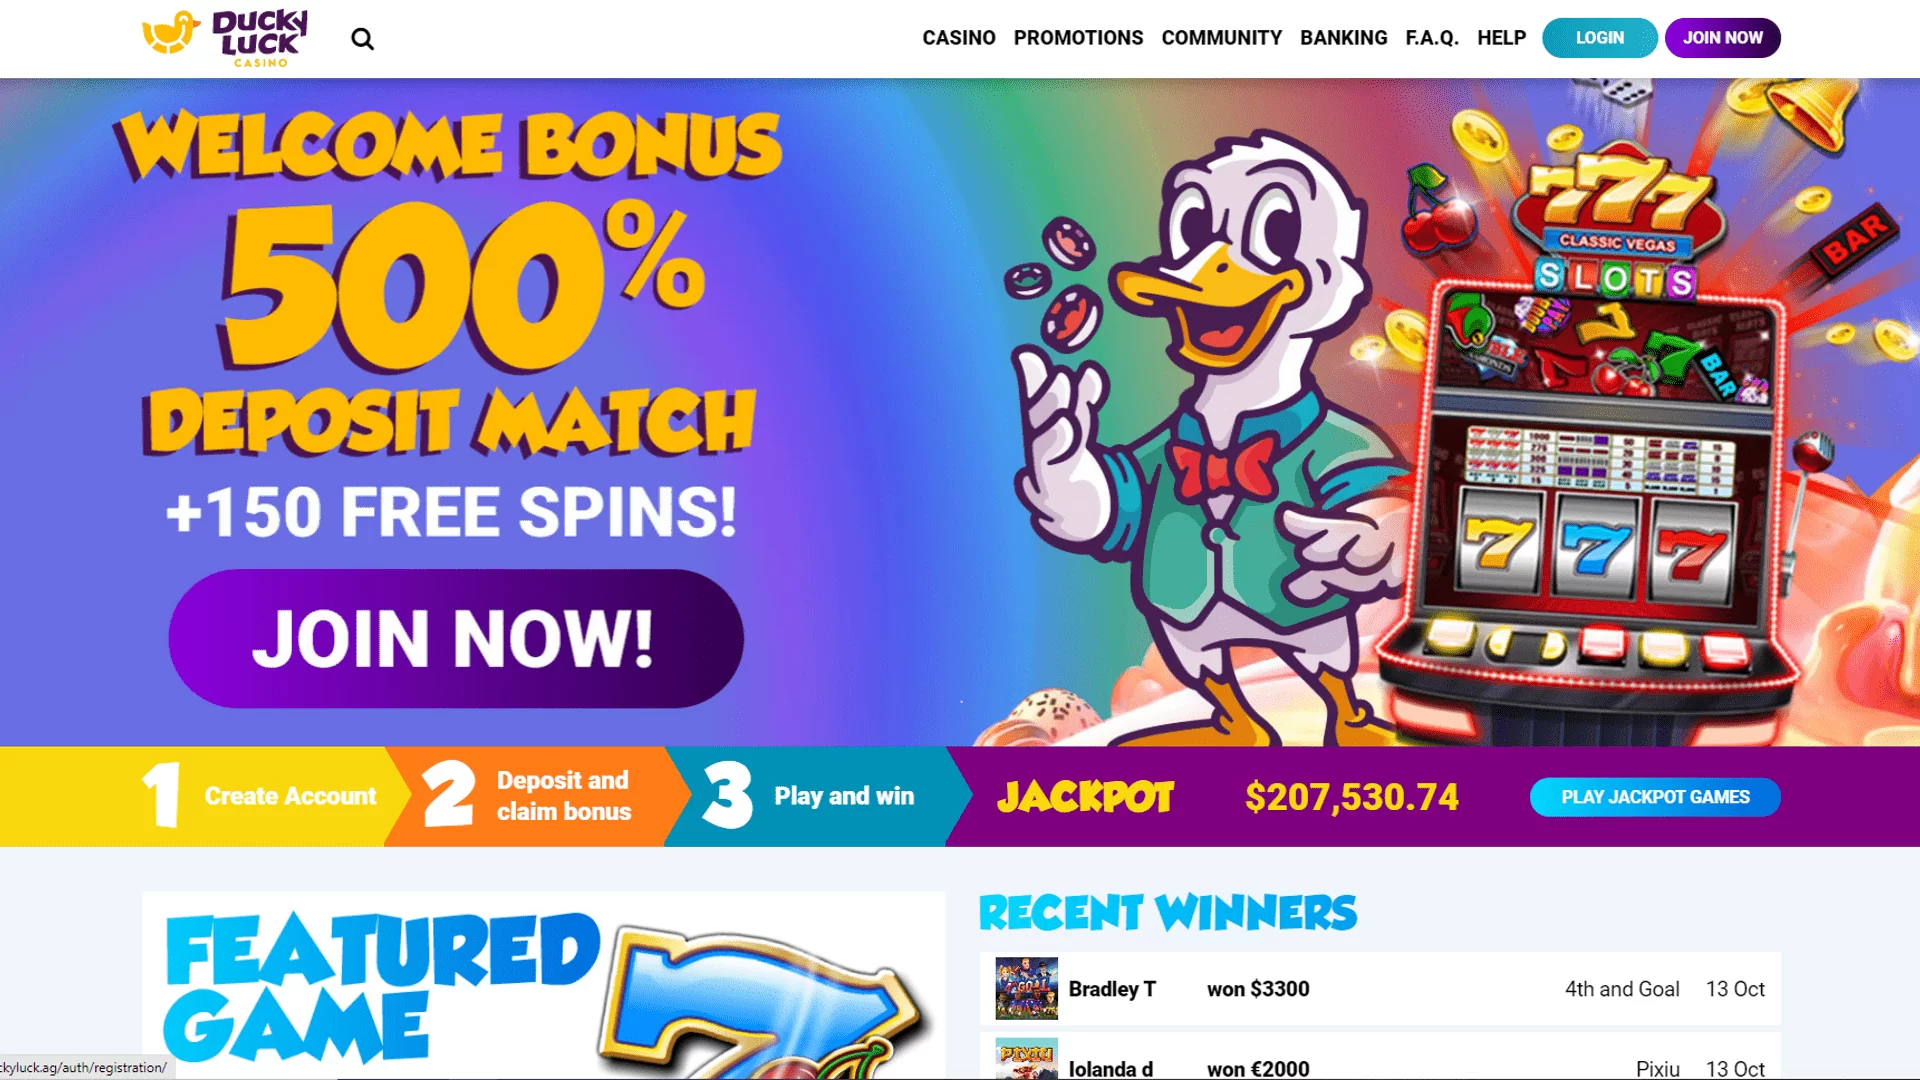 casino free spins bonus